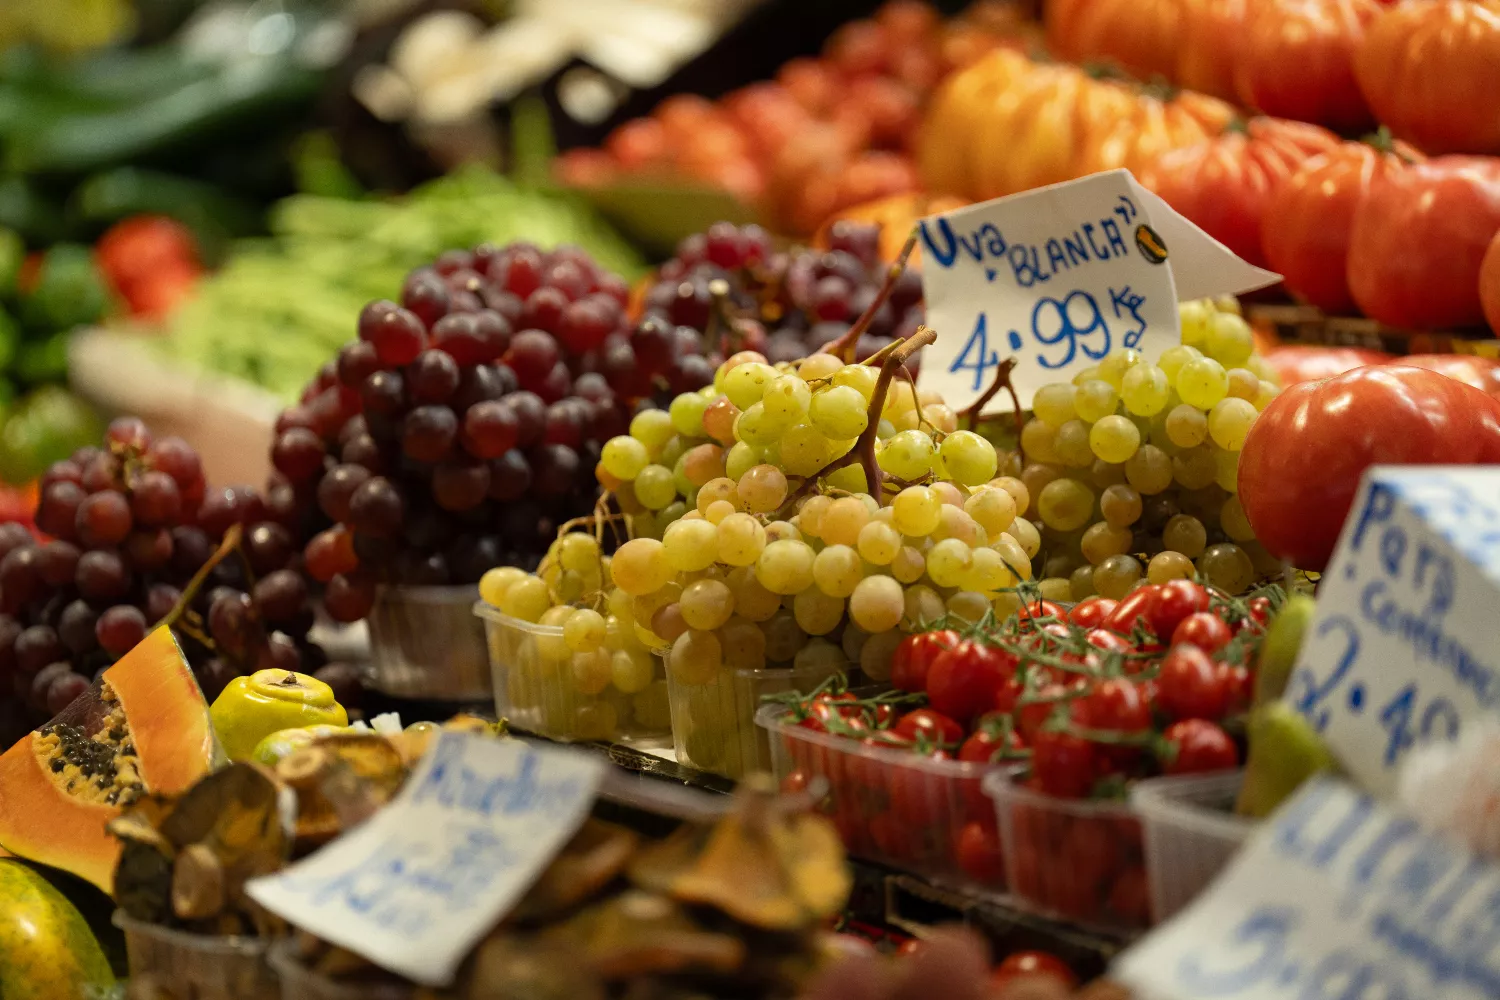 Precio de las uvas en el puesto de un mercado / EUROPA PRESS - DAVID ZORRAKINO